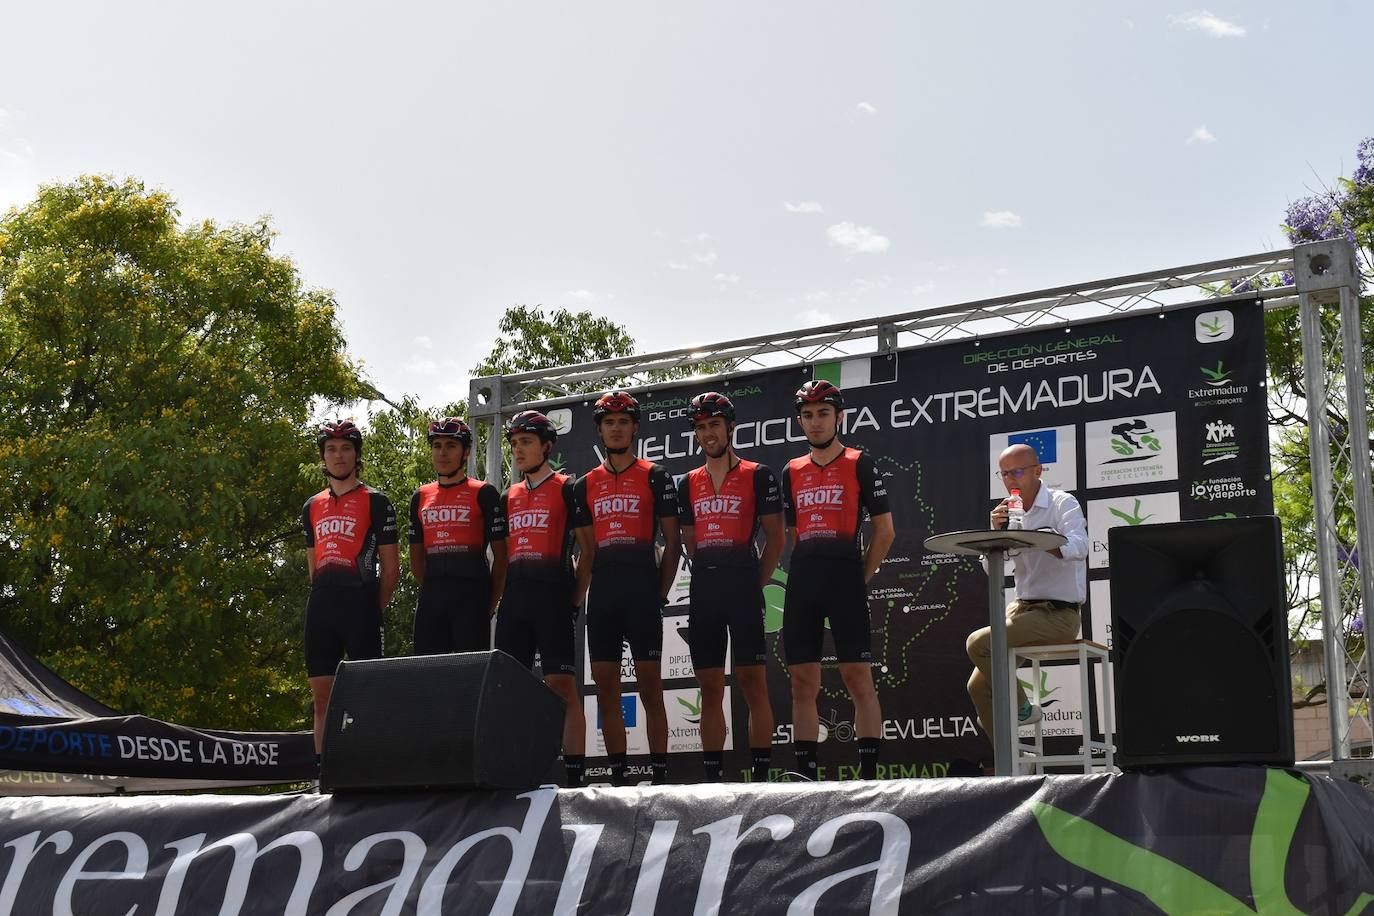 Miajadas se convirtió el pasado sábado en uno de los puntos clave de la Vuelta Ciclista Extremadura 2022 siendo el punto de salida oficial de la cuarta etapa. Miajadeños y visitantes se acercaron hasta la avenida García Siñeriz para conocer de cerca la 'serpiente multicolor', a los ciclistas y equipos llegados desde distintos puntos del país. 